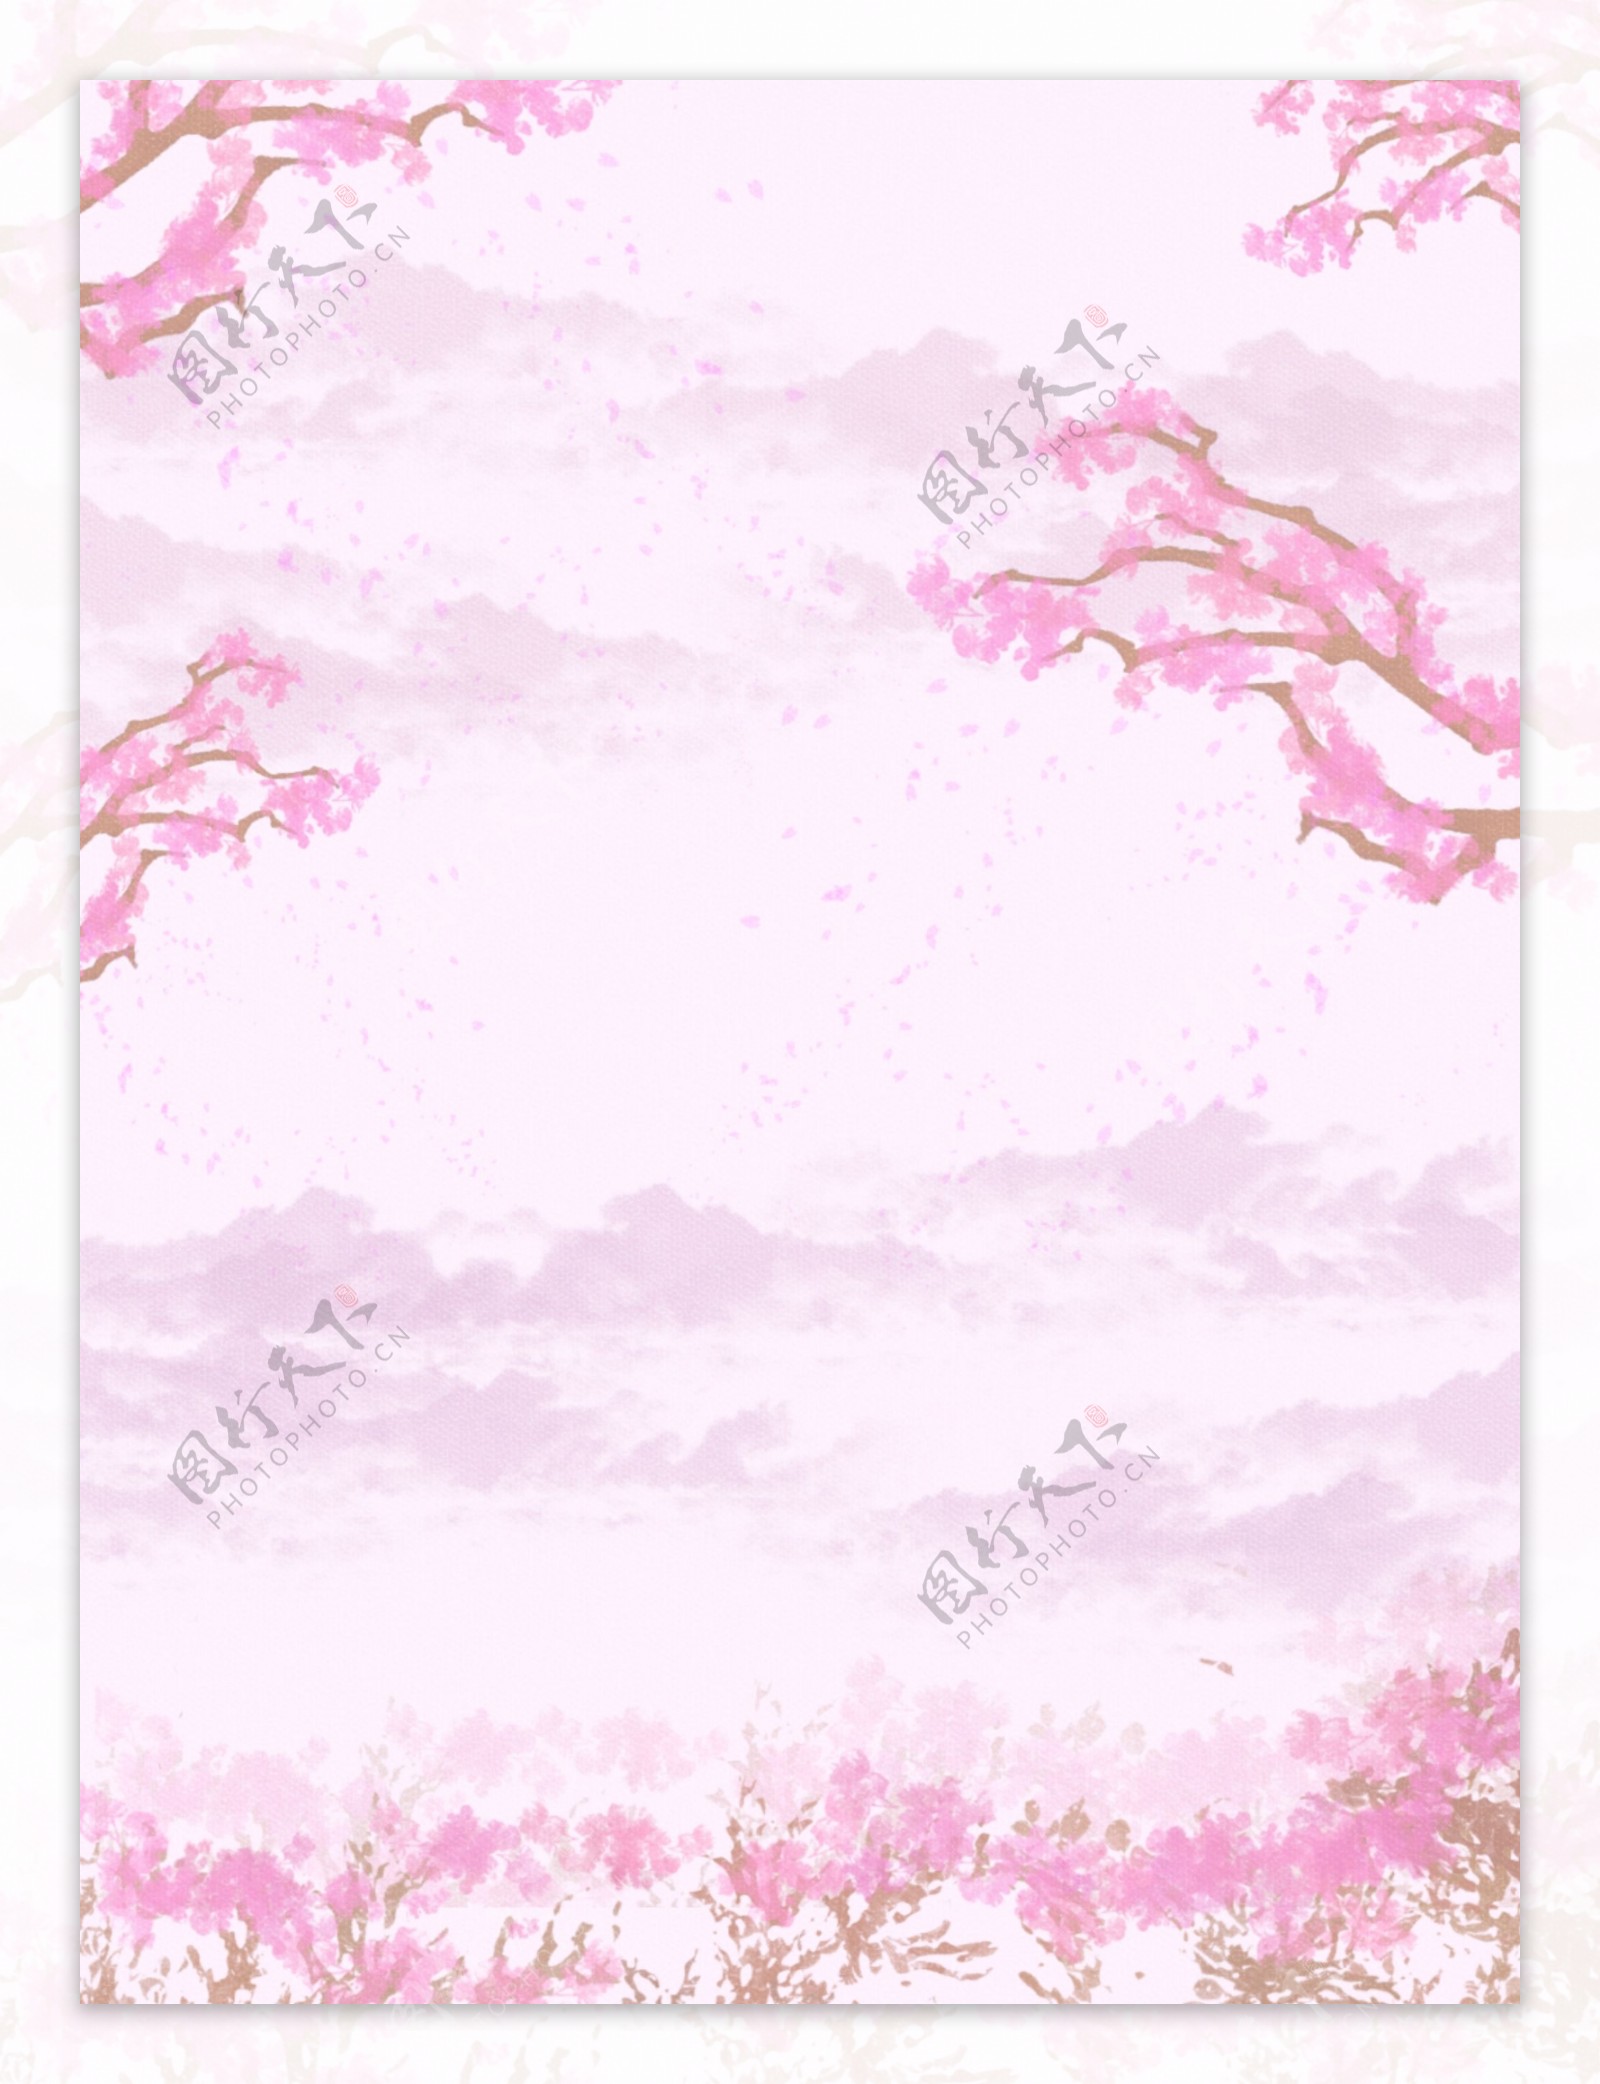 纯原创手绘粉红色桃花背景